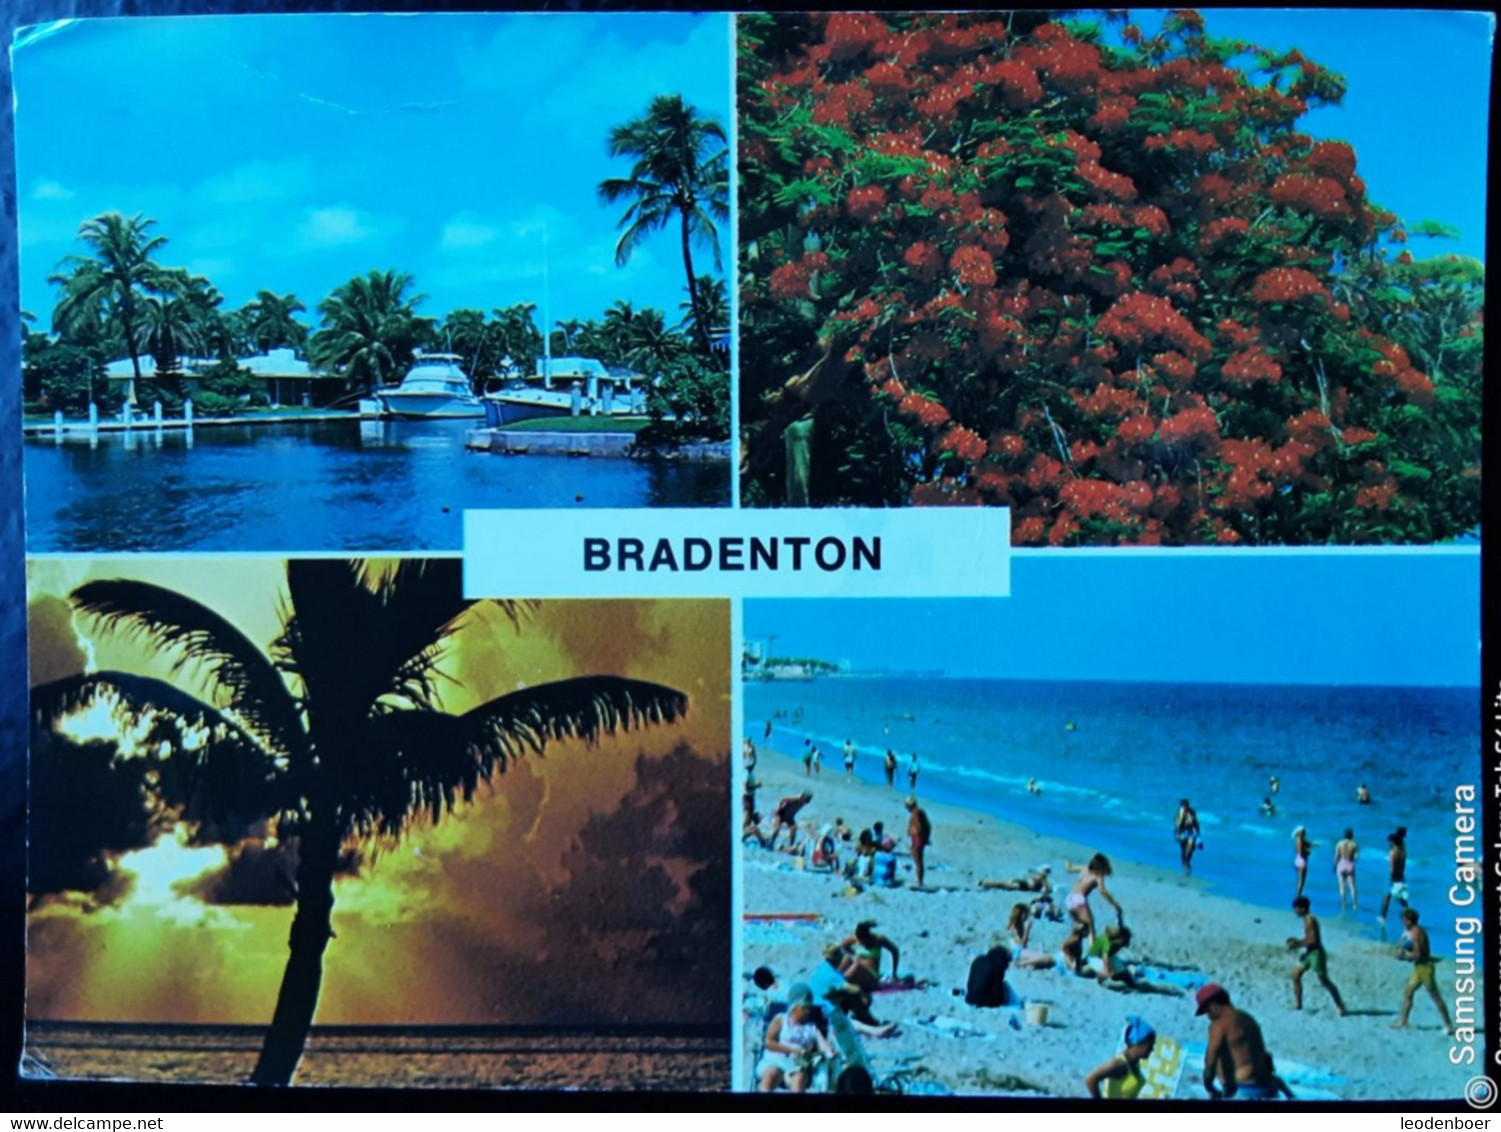 Bradenton - CD554 - Bradenton